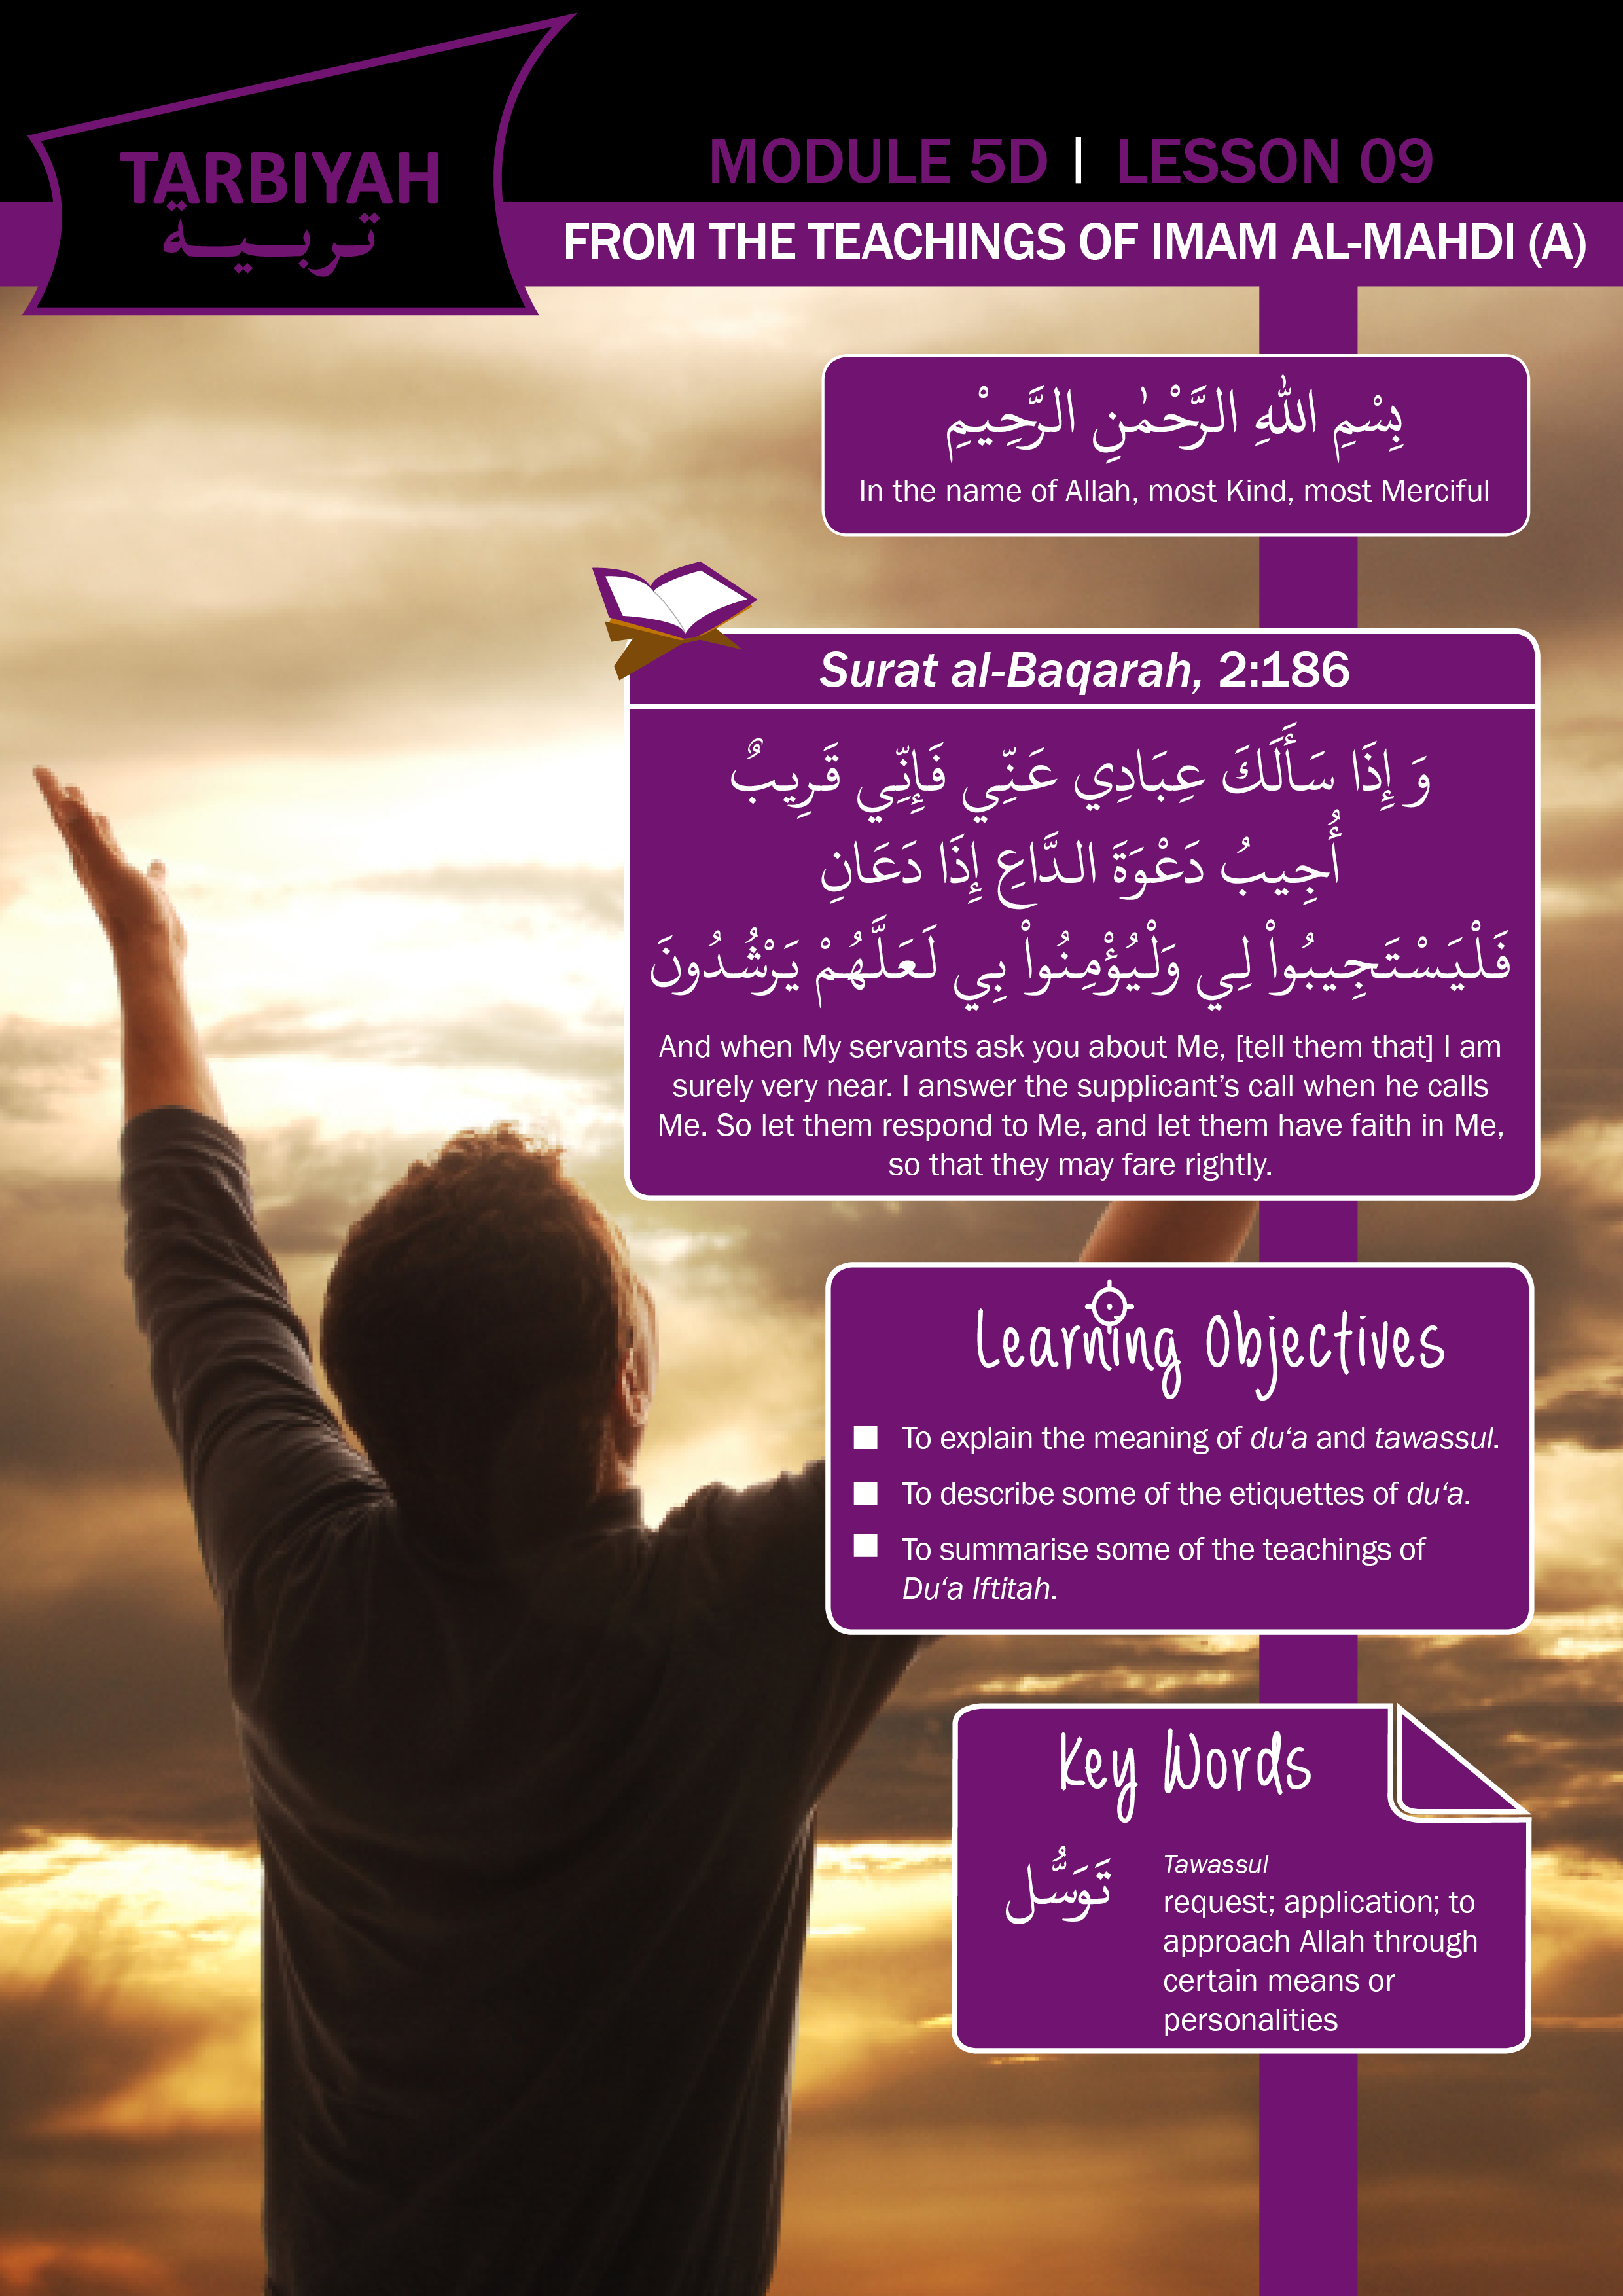 5D09 – FROM THE TEACHINGS OF IMAM AL- MAHDI (A)